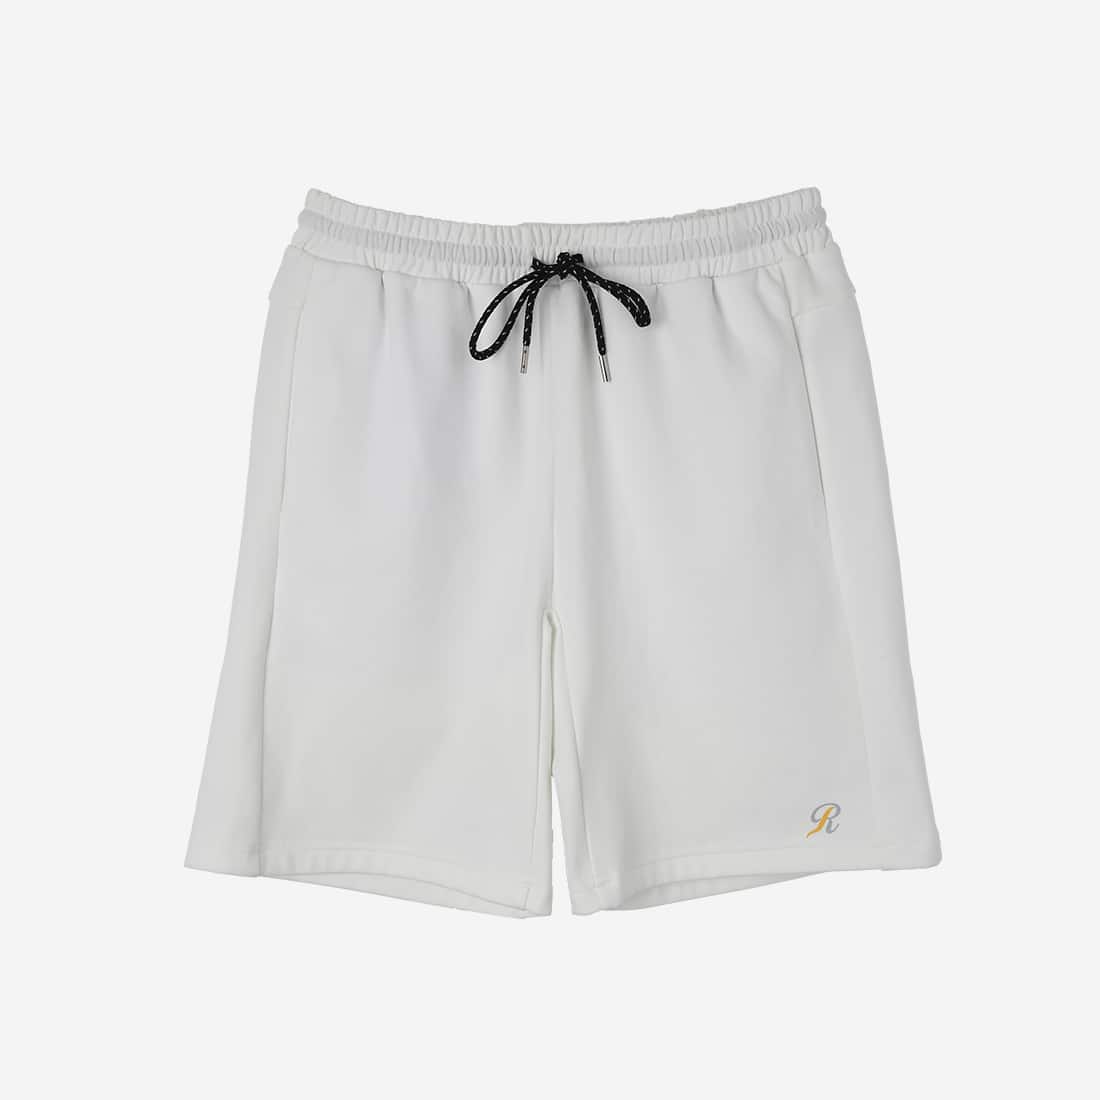 【ReZARD Sports】Sweat Short Pants(WHITE)